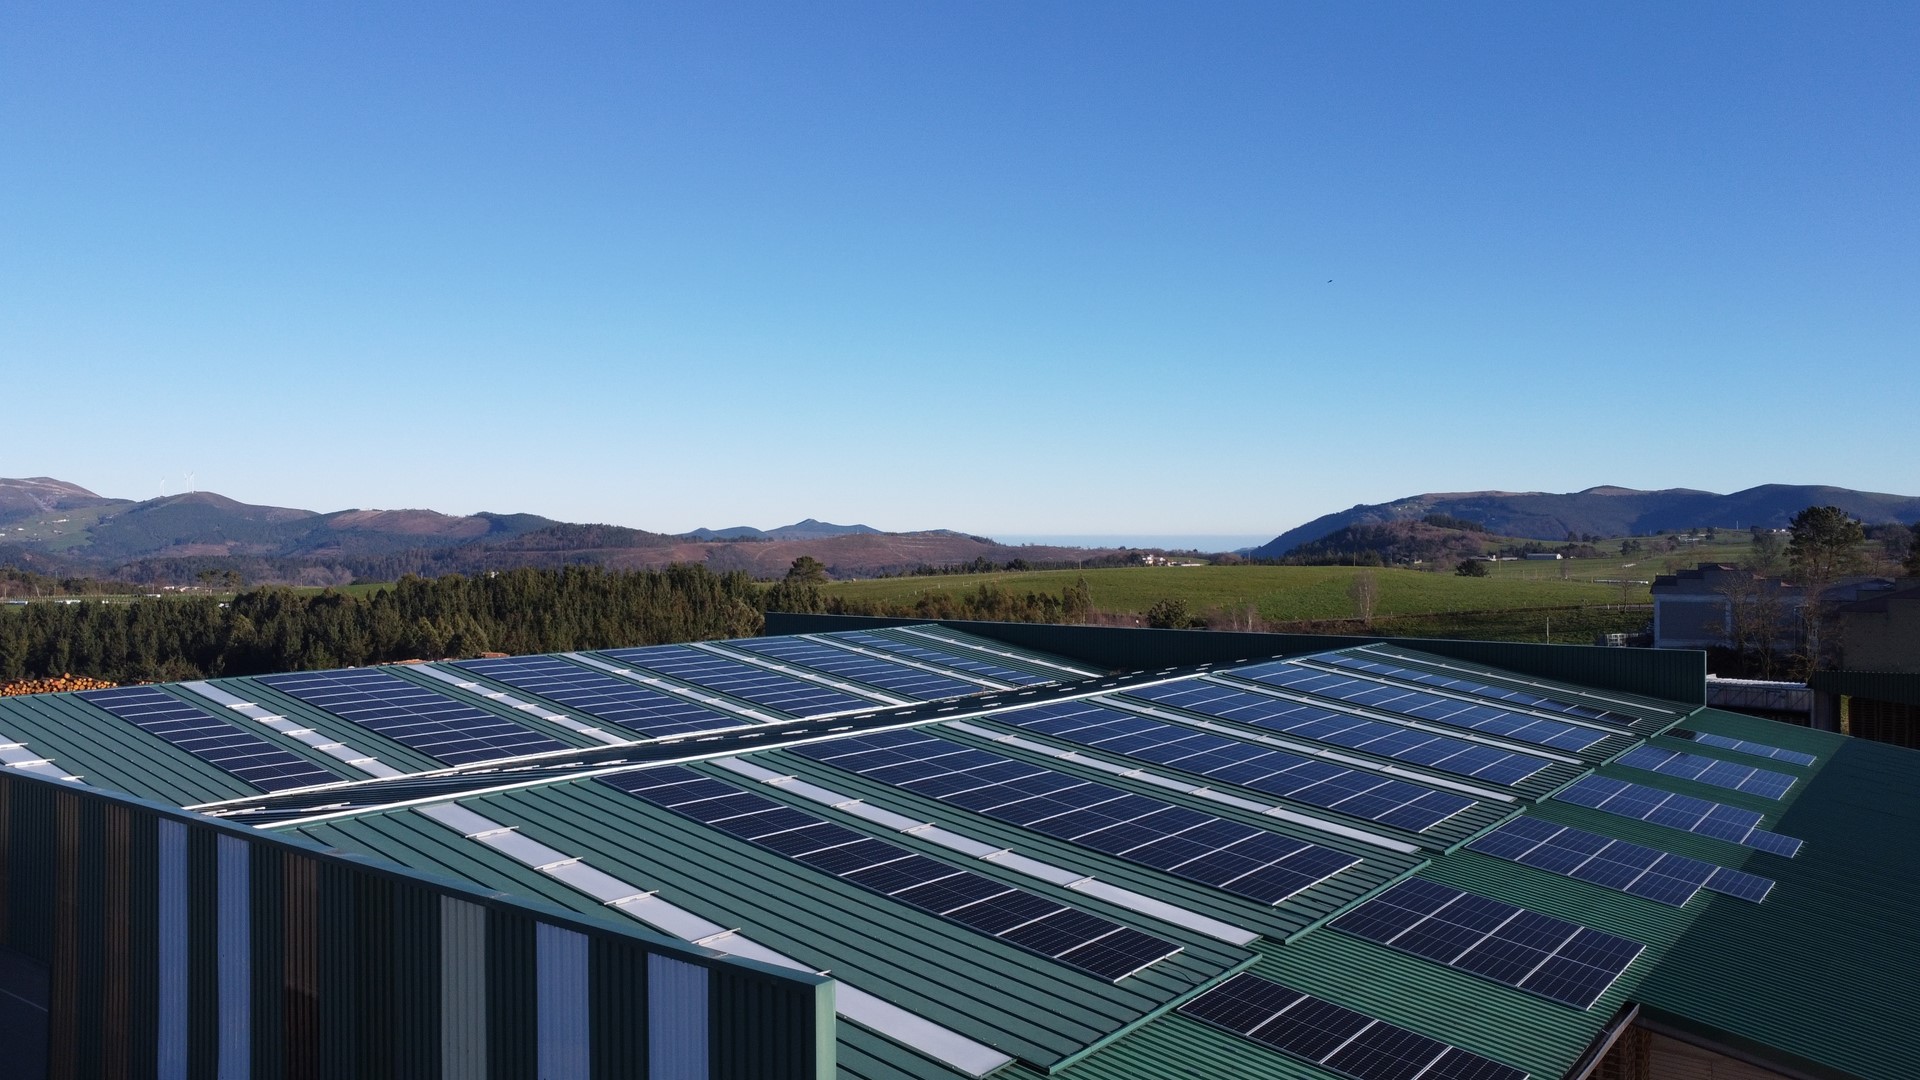 Autoconsumo fotovoltaico en empresa del sector maderero